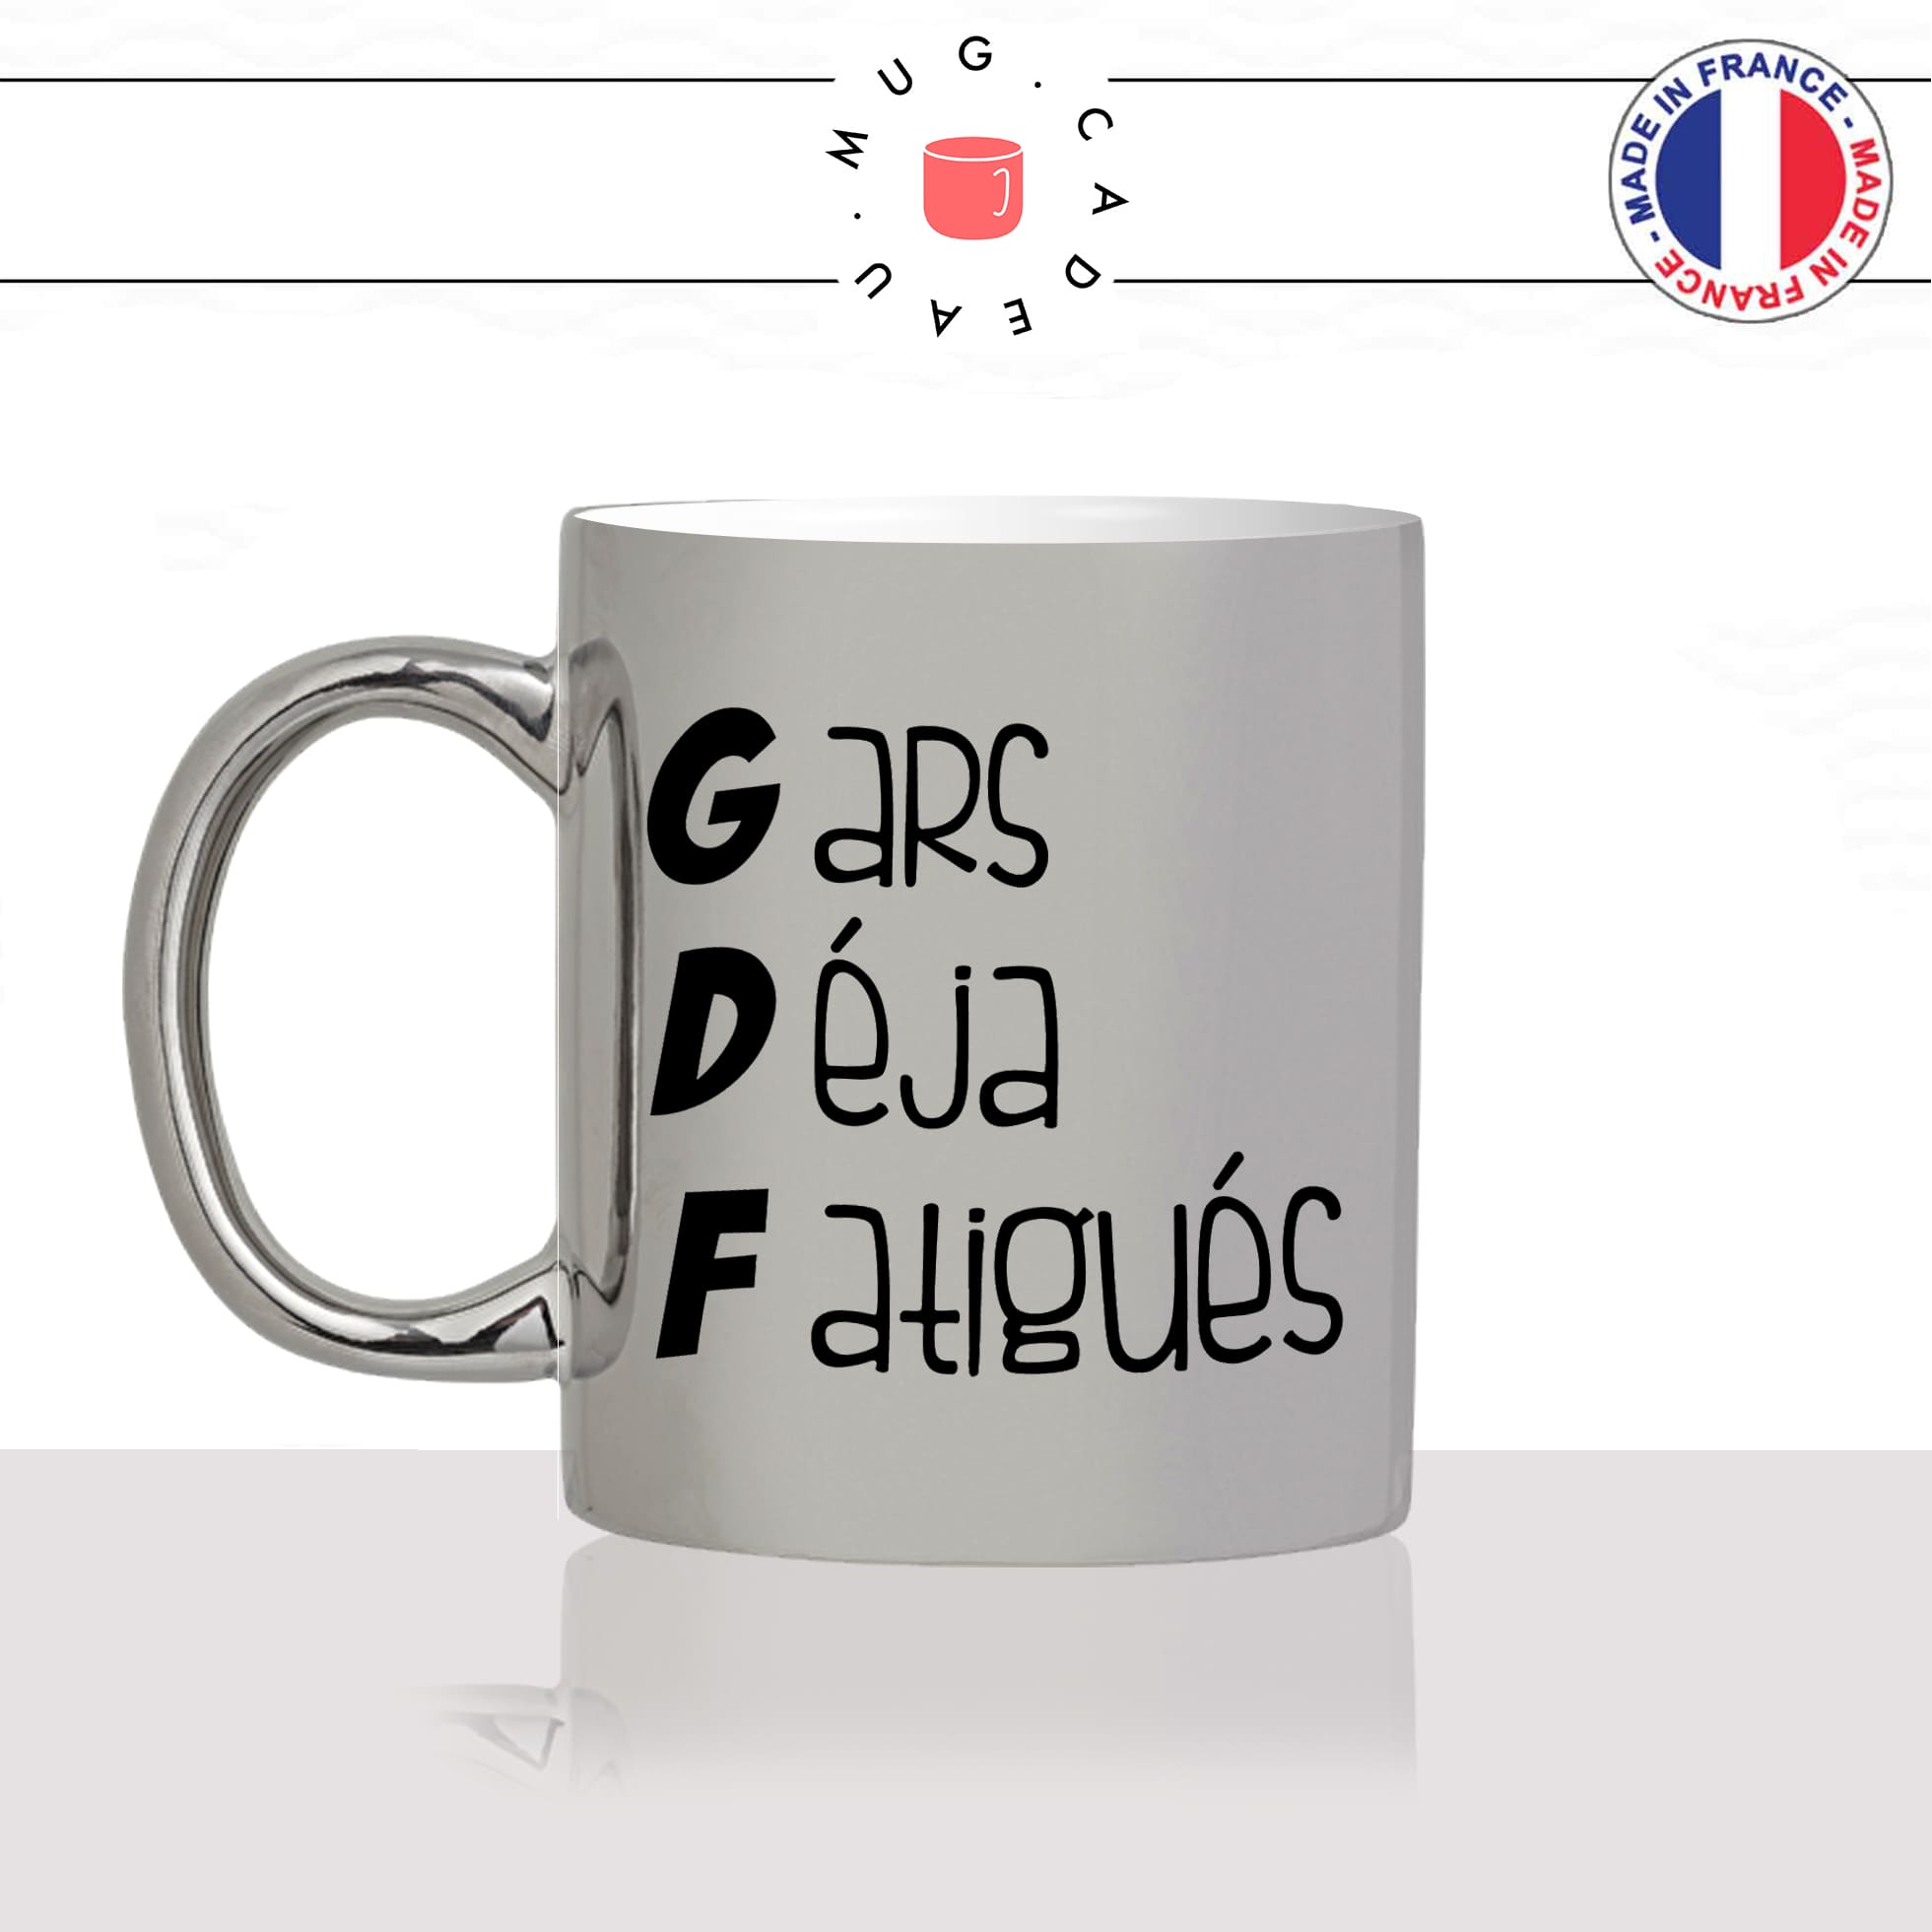 mug-tasse-argenté-argent-gris-silver-gdf-gars-deja-fatigués-metier-collegue-accronyme-homme-femme-humour-fun-cool-idée-cadeau-original